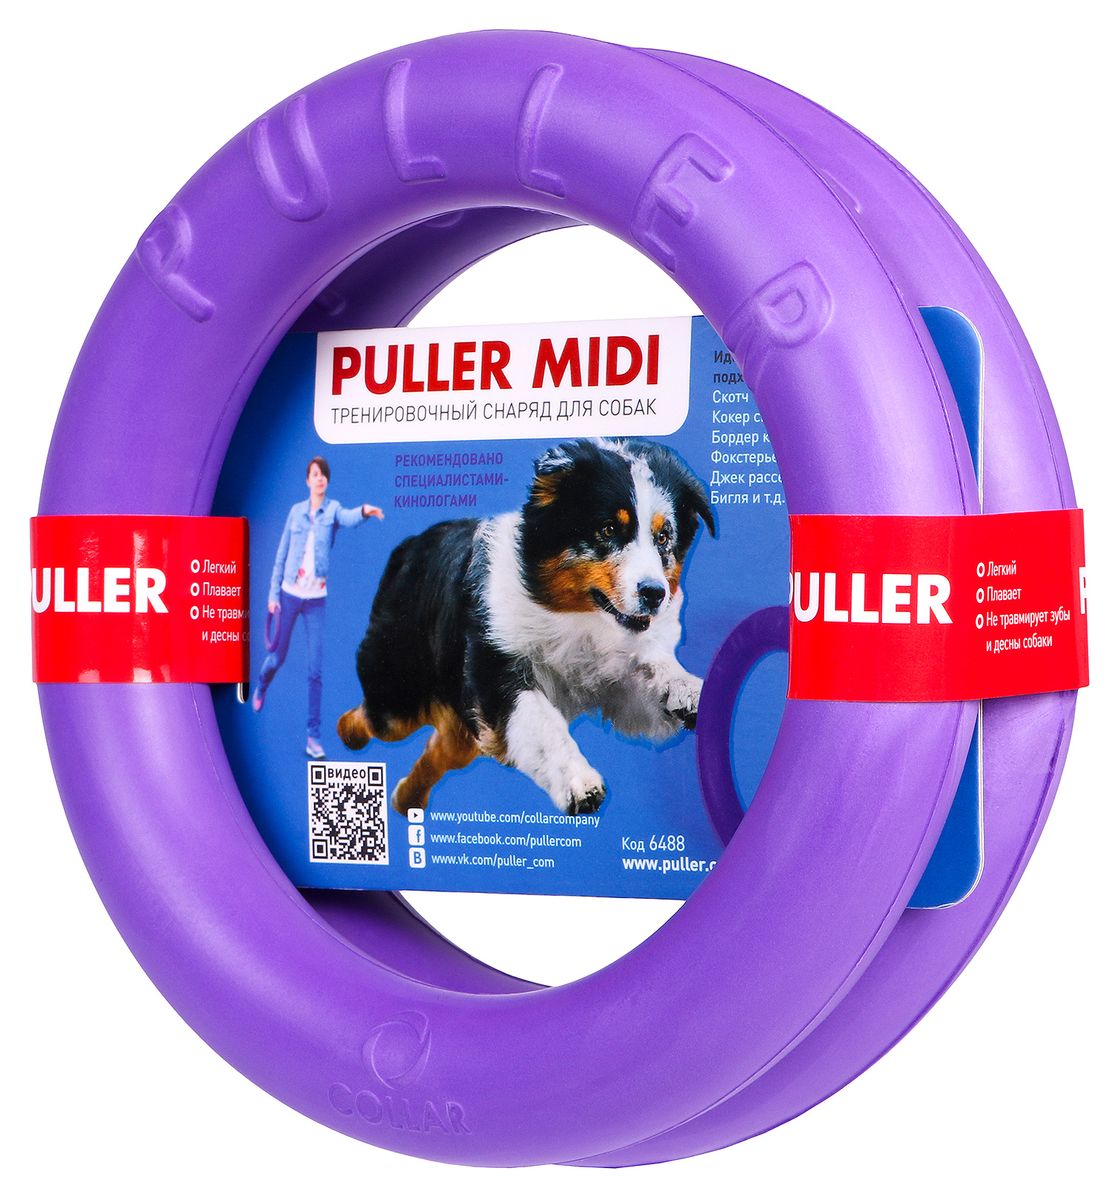 фото Тренировочный снаряд Puller "Midi", цвет: фиолетовый, диаметр: 20 см, 2 шт